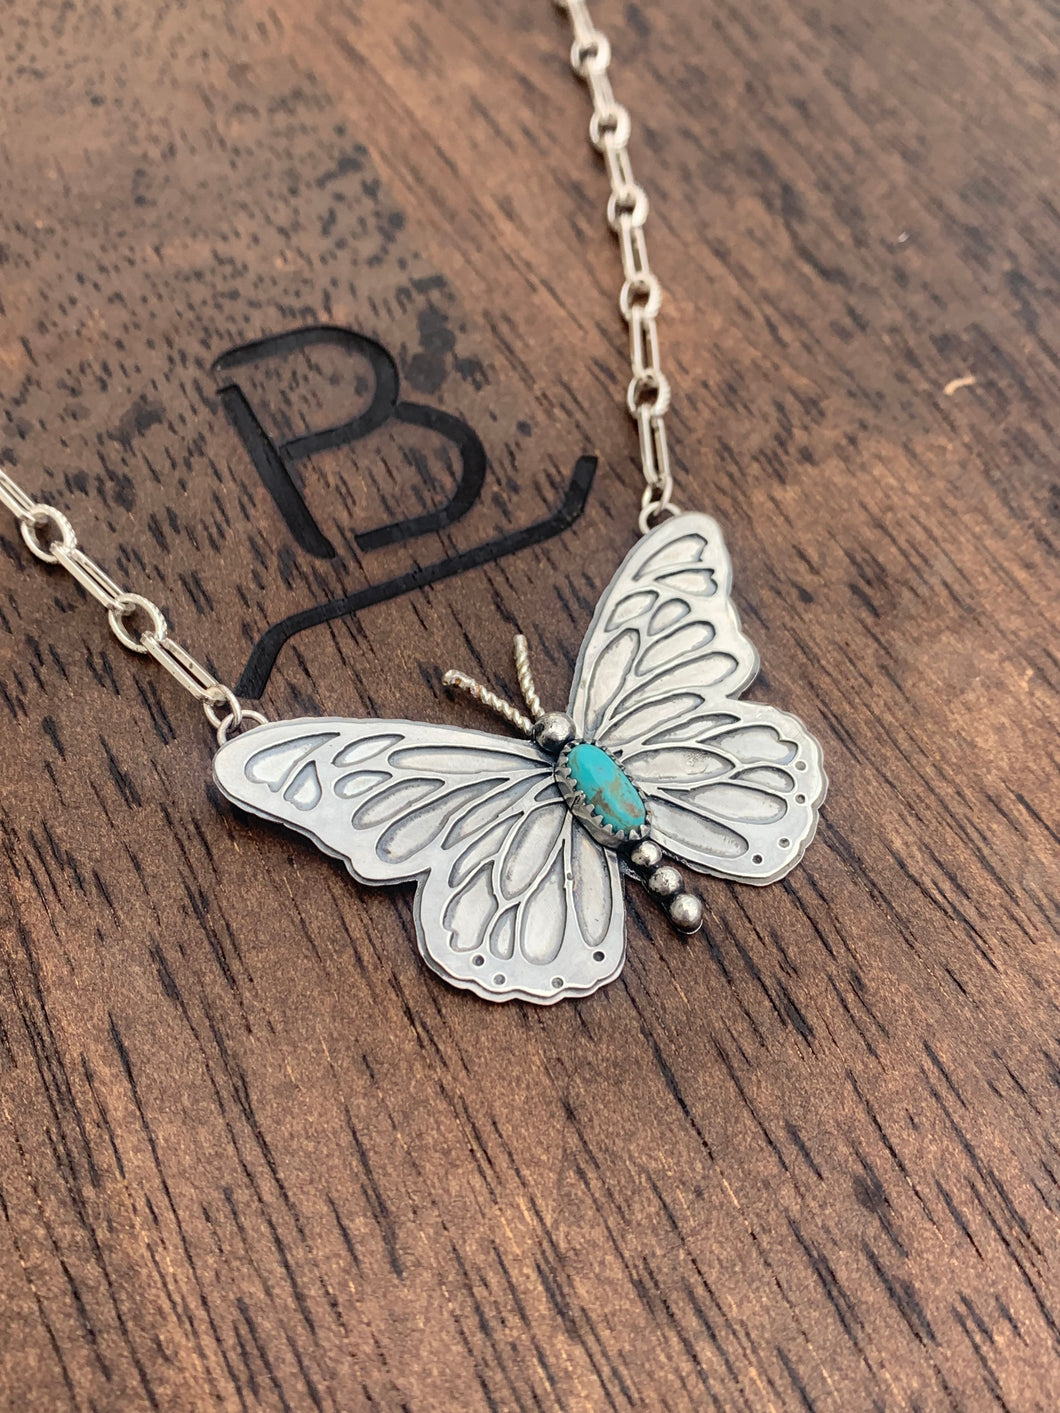 Kingman Butterfly necklace